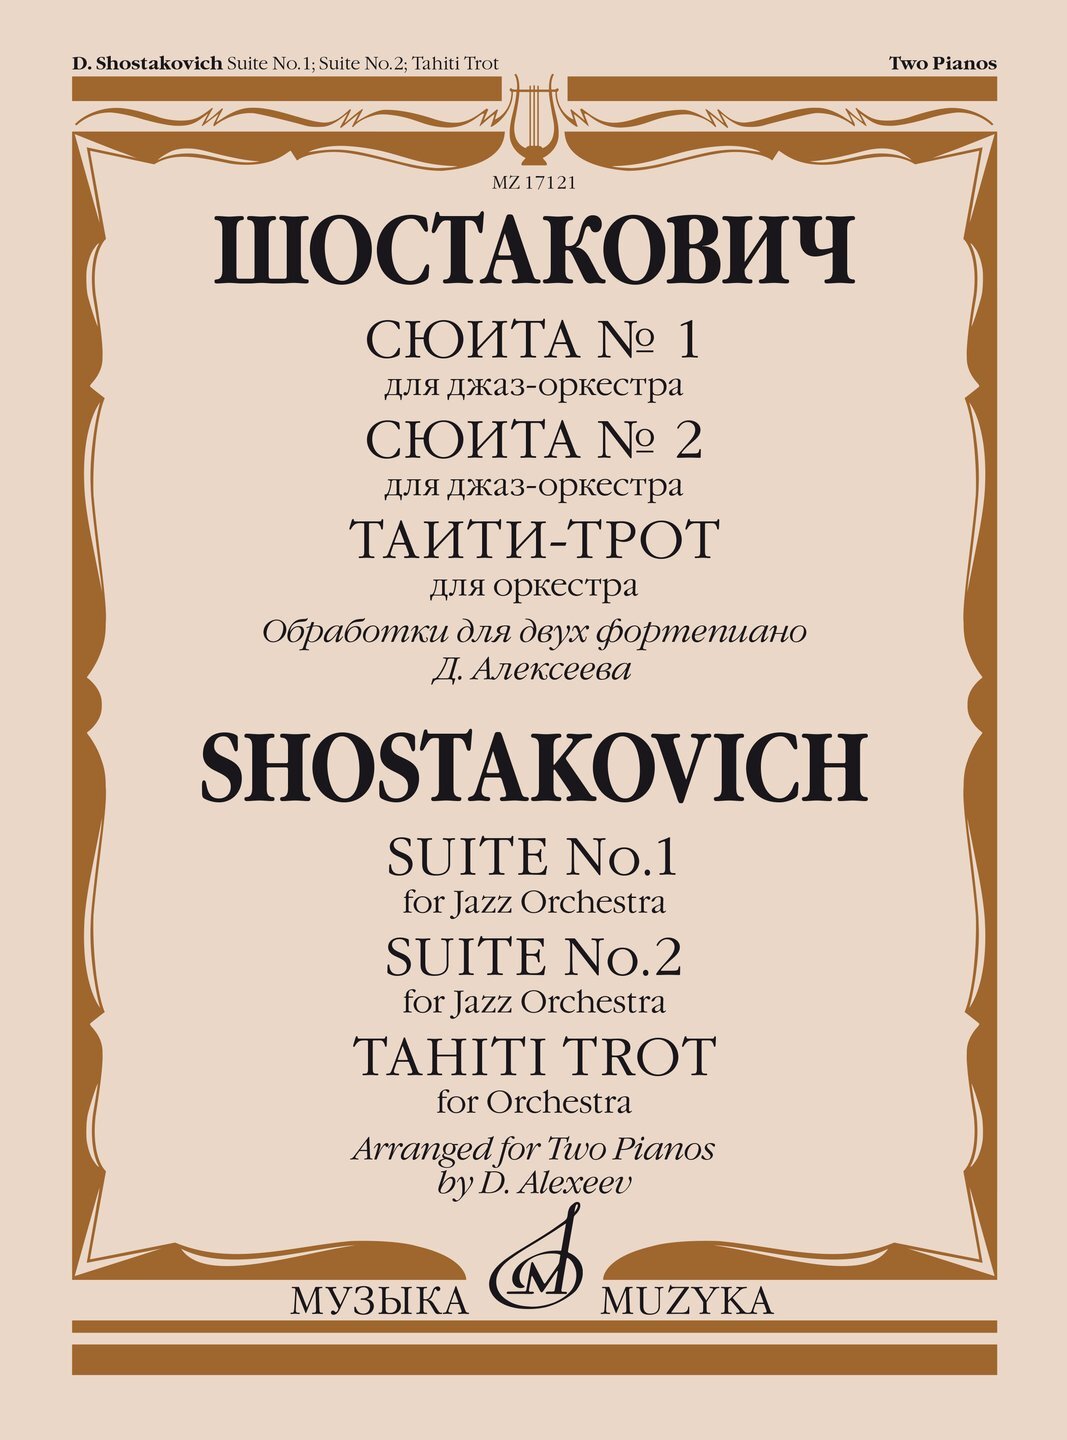 Произведения для фортепиано шостаковича. Шостакович Таити-трот. Джазовая сюита Шостаковича. Шостакович джаз сюита 2. Джазовая сюита Шостаковича для двух фортепиано.